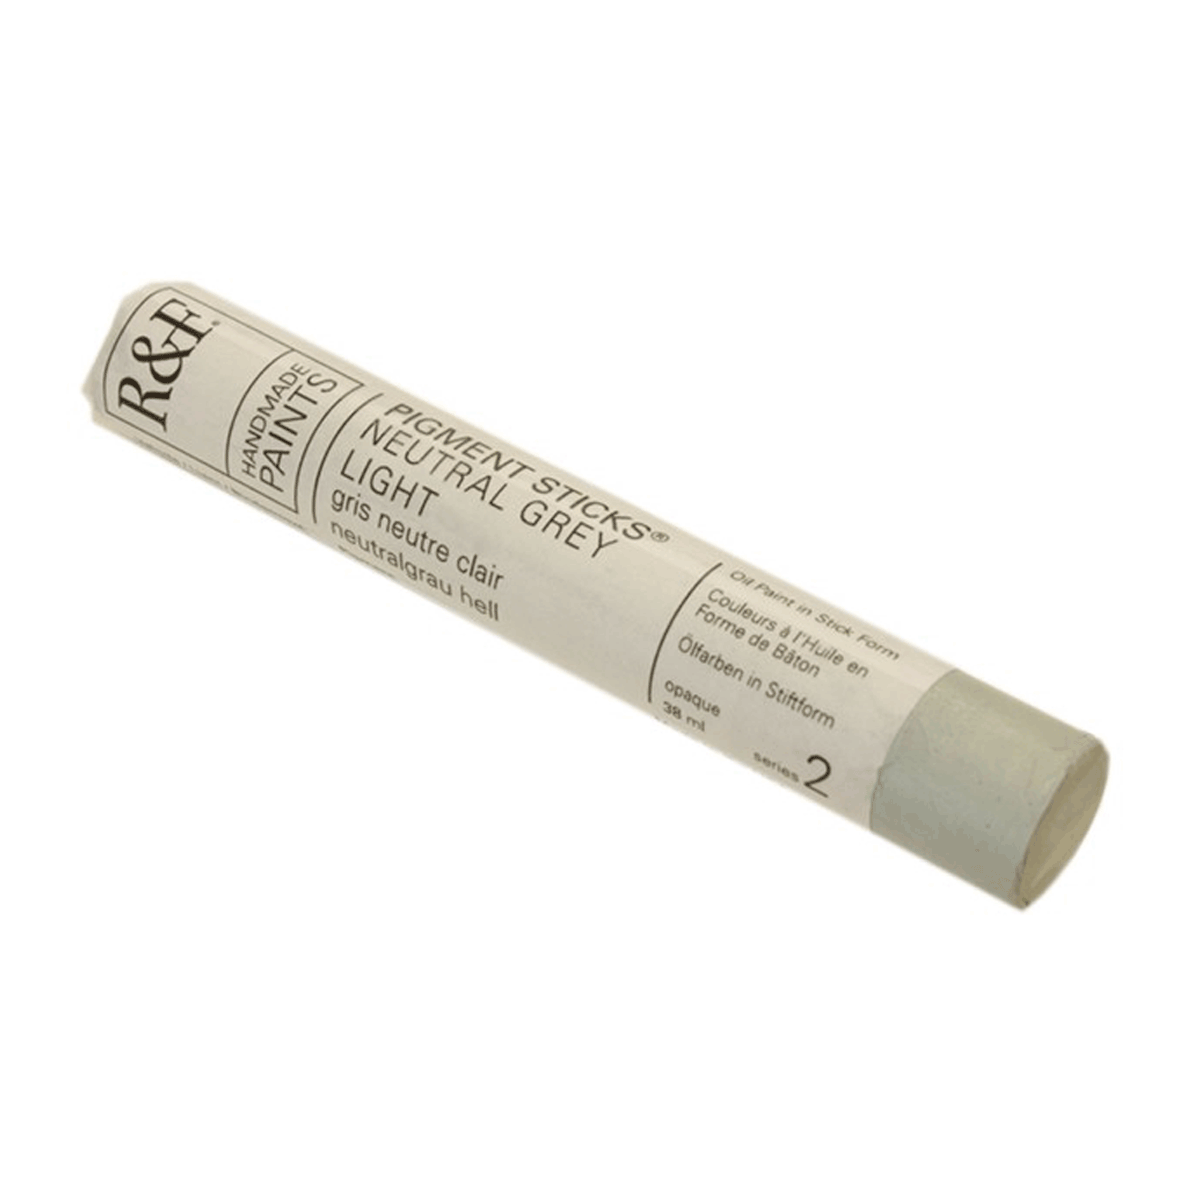 R&F Oil Pigment Stick, Neutral Grey Light 38ml